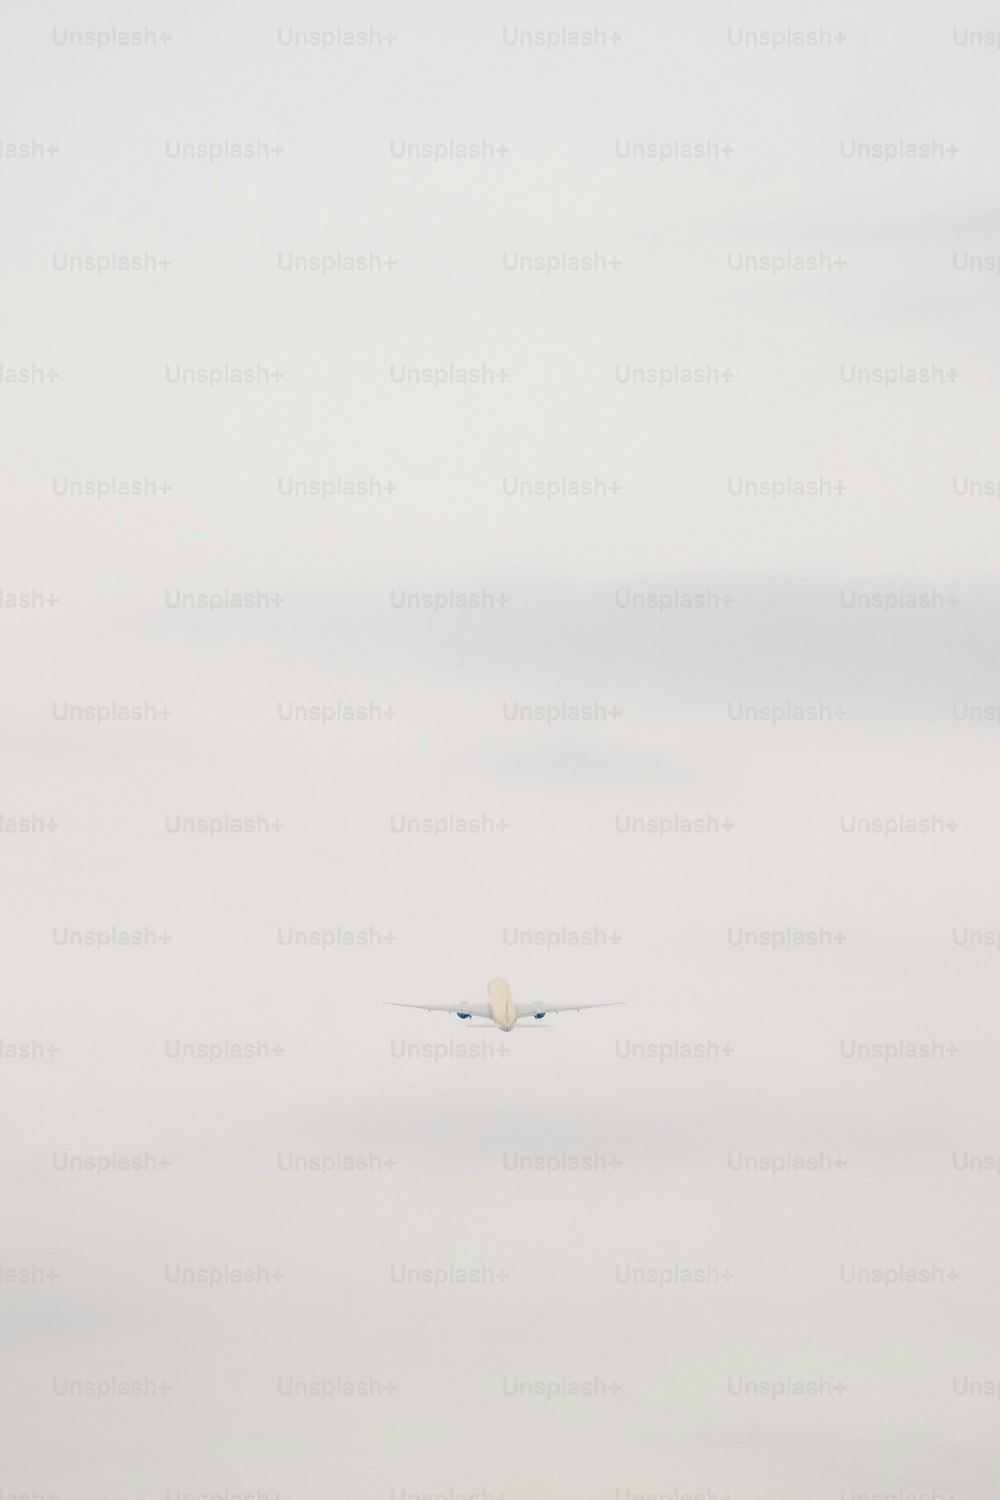 Un avión volando en el cielo con una nube en el fondo